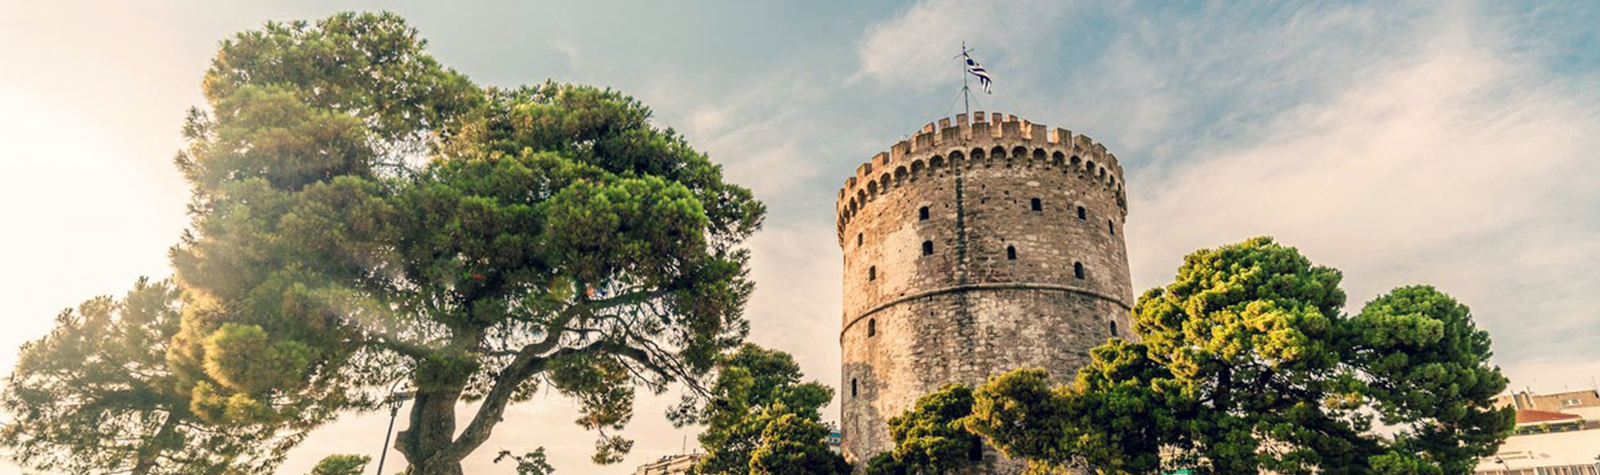 Η Θεσσαλονίκη χρειάζεται ένα νέο επιχειρηματικό σχέδιο – Τι πρέπει να γίνει